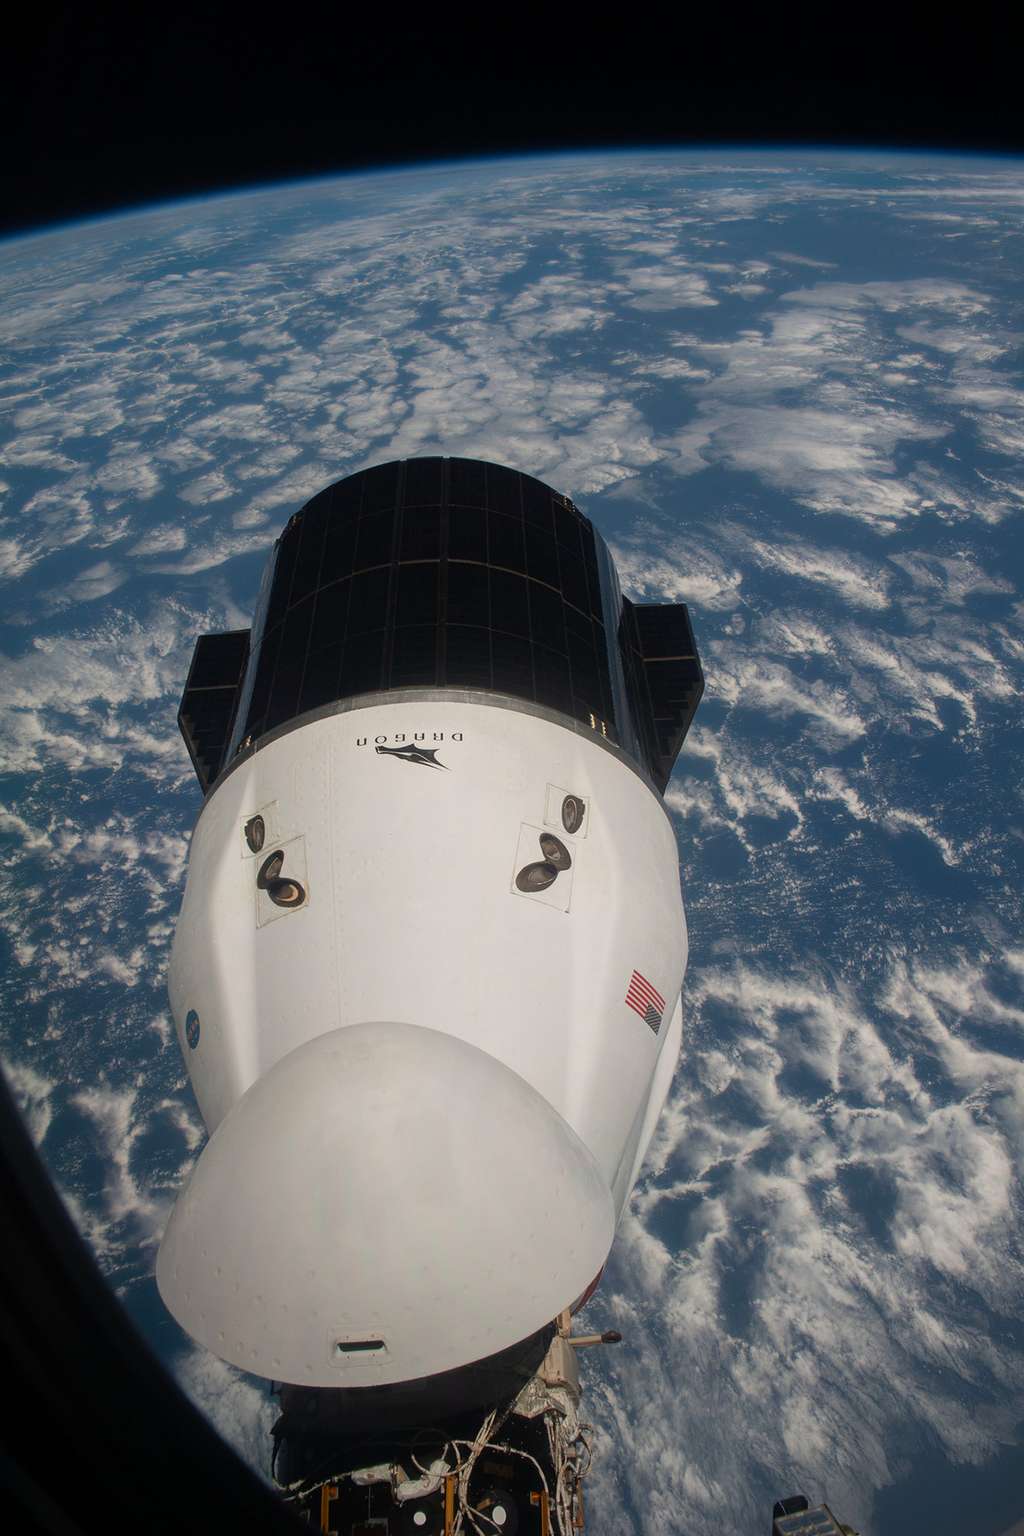 Le Crew Dragon à bord duquel redescendra Thomas Pesquet. On le voit amarré au module Harmony de l'ISS. © Nasa